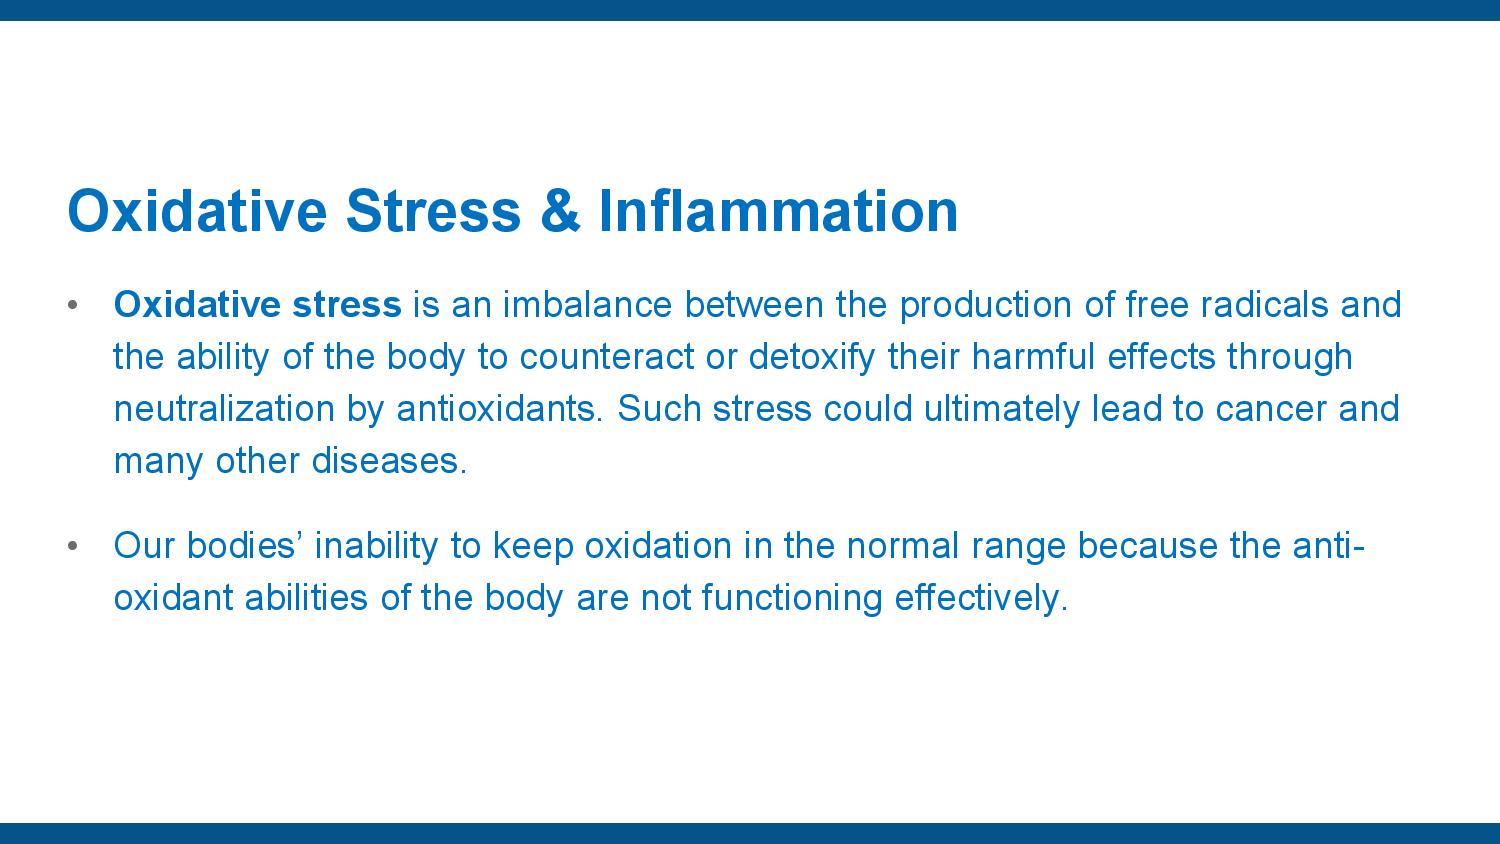 Oxidatative Stress page 4